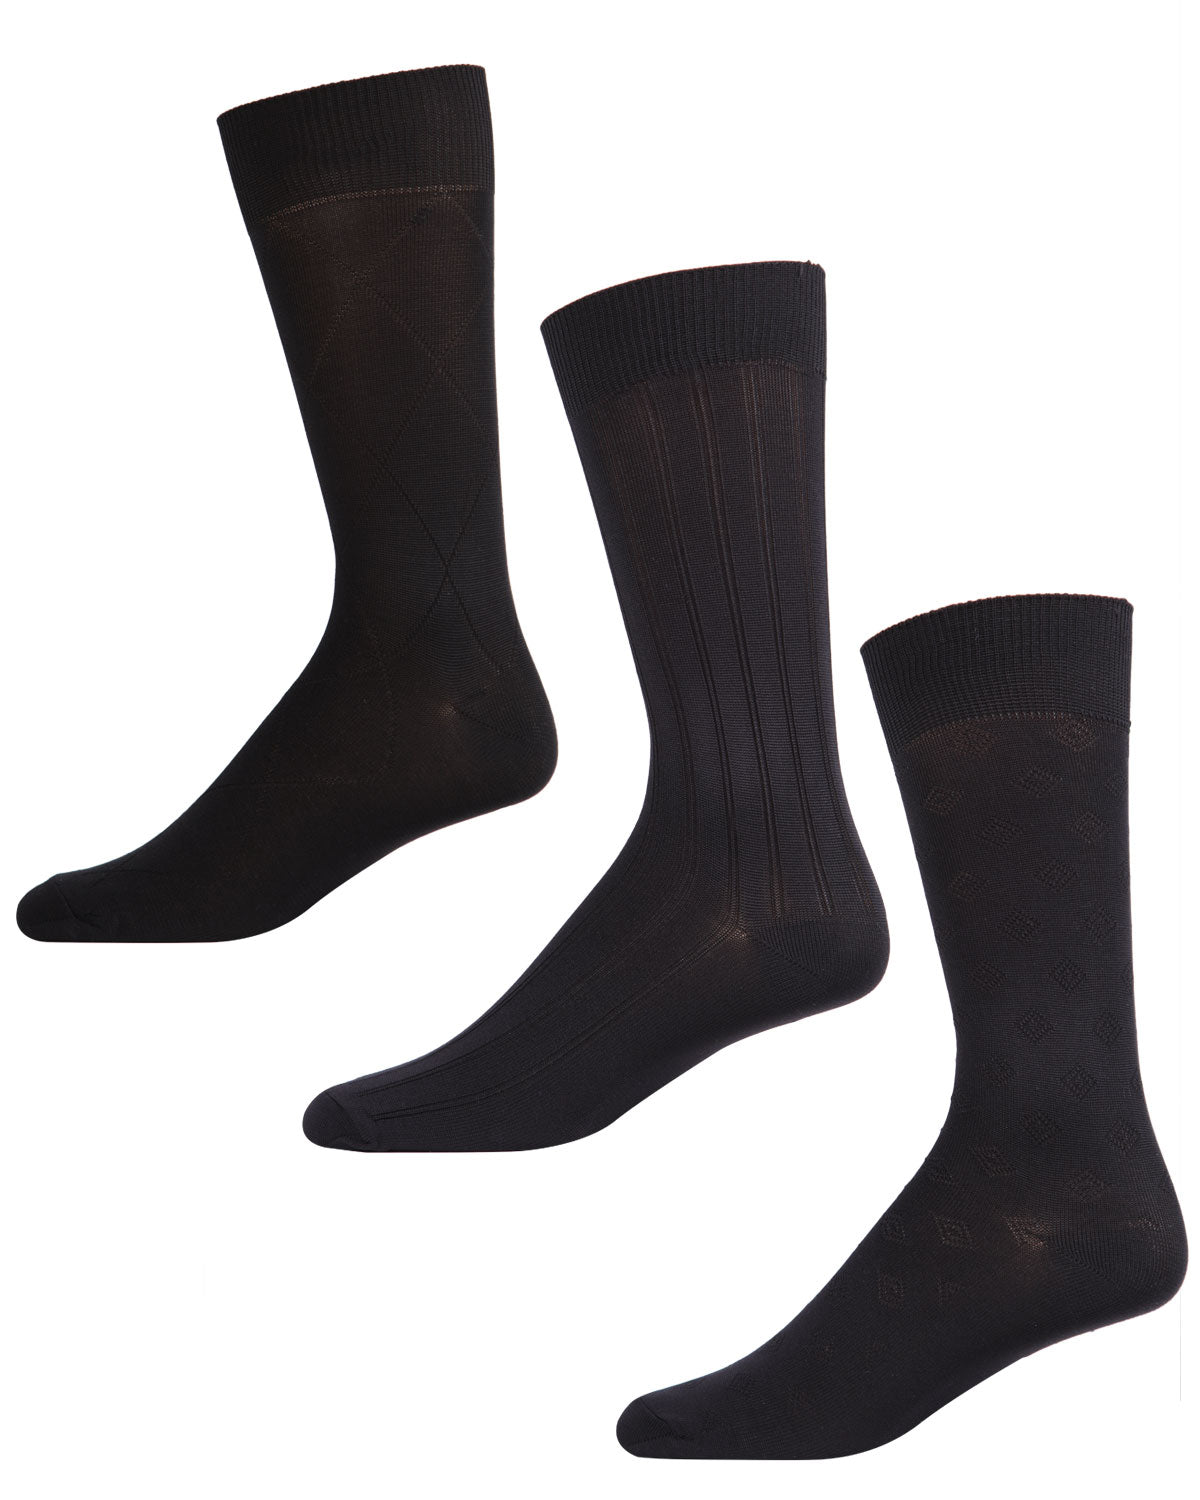 3 Pair Men's Cotton Blend Classic Argyle Crew Socks